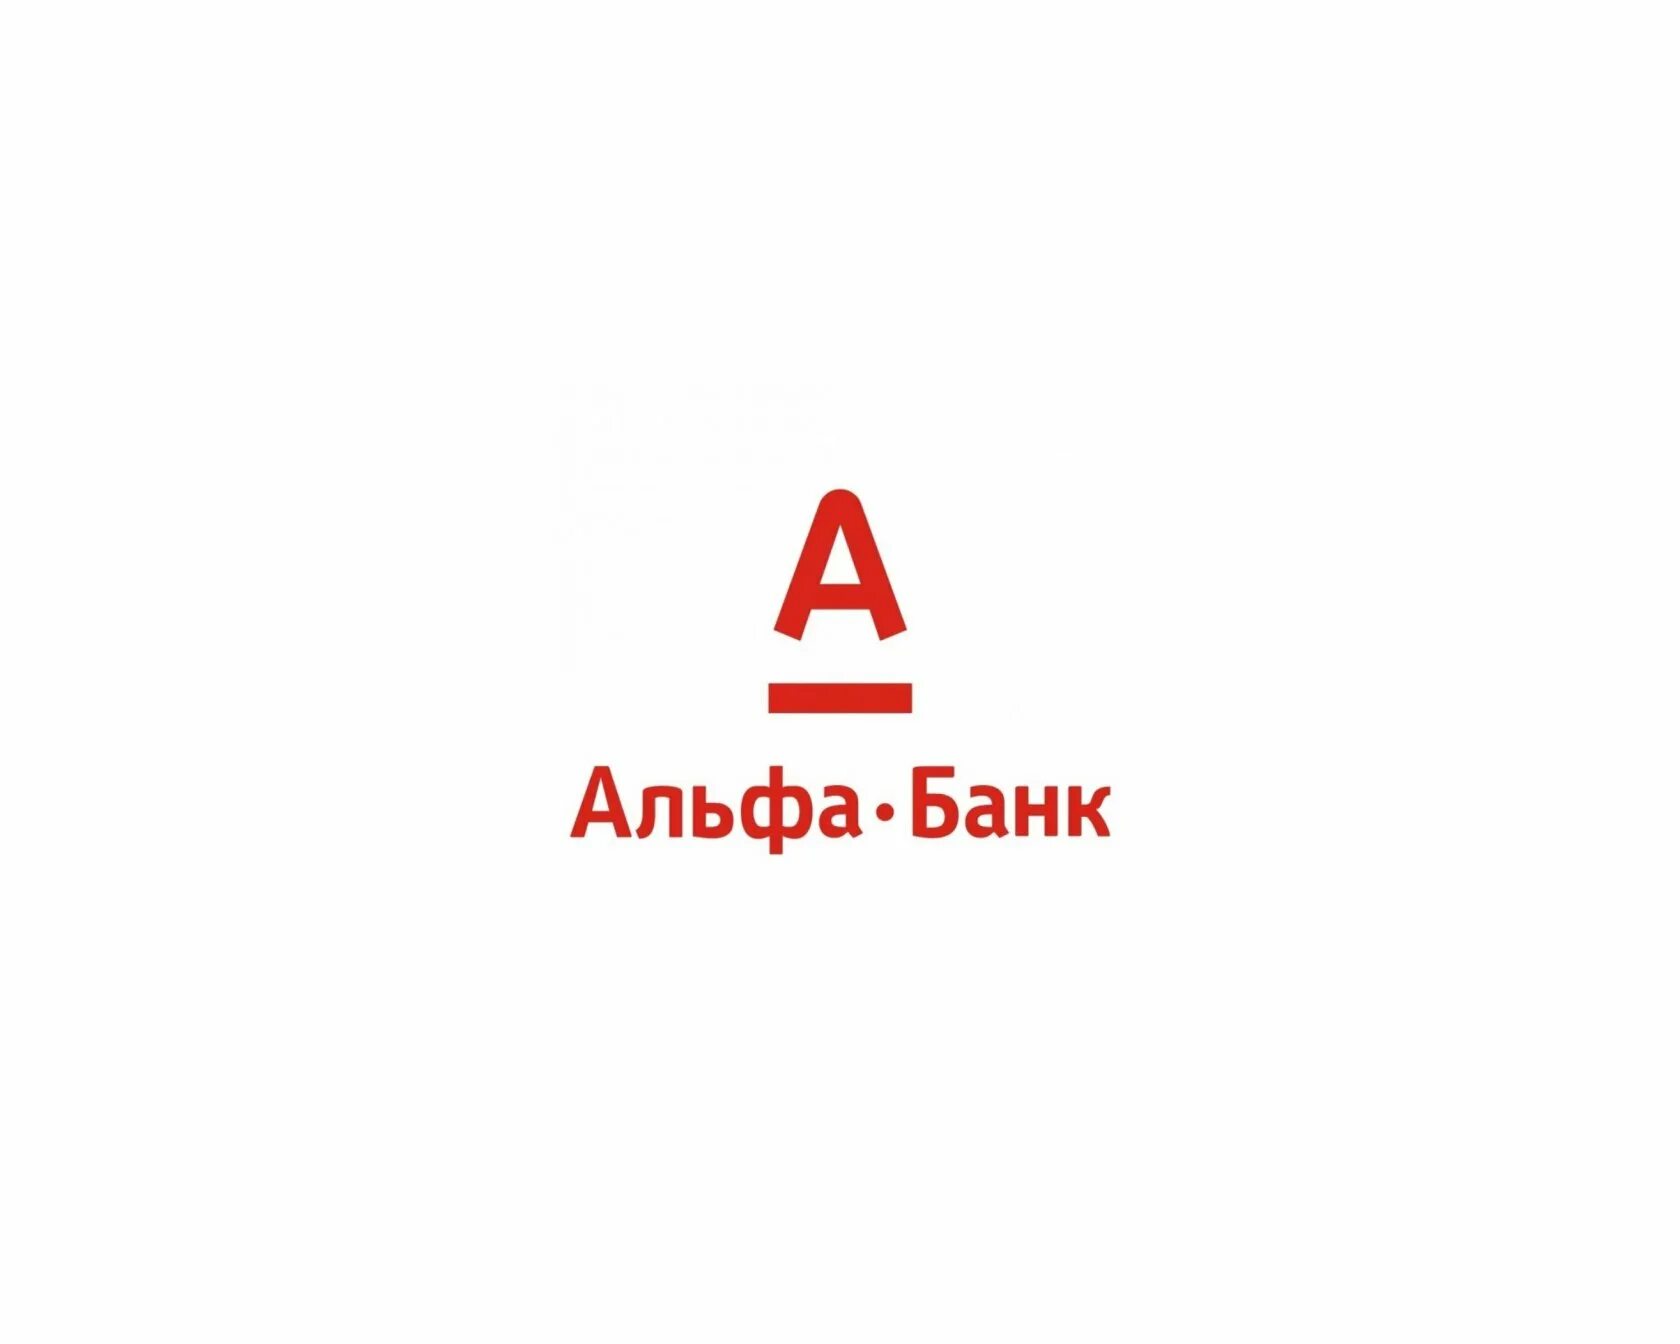 Альфа банк запрет. Эмблема Альфа банка. Альфа банк логотип на белом фоне. Алеф банк. Альфа банк иллюстрации.